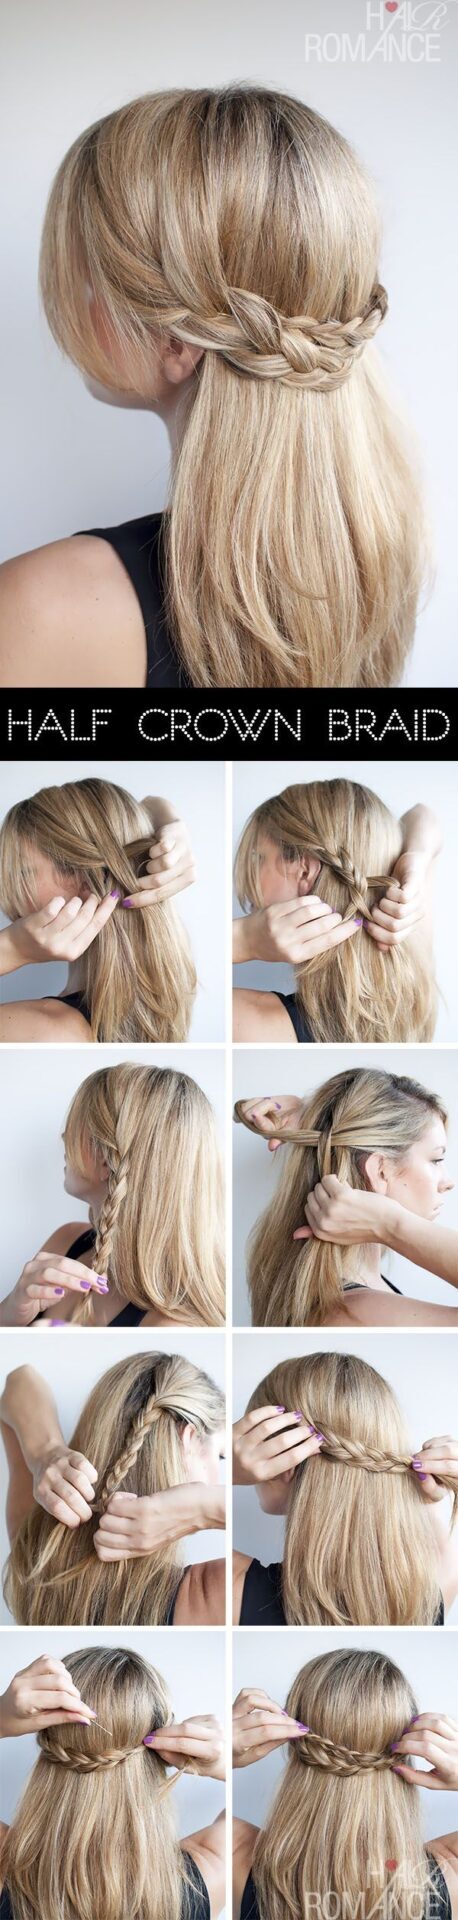 half-crown-braid-tutorial